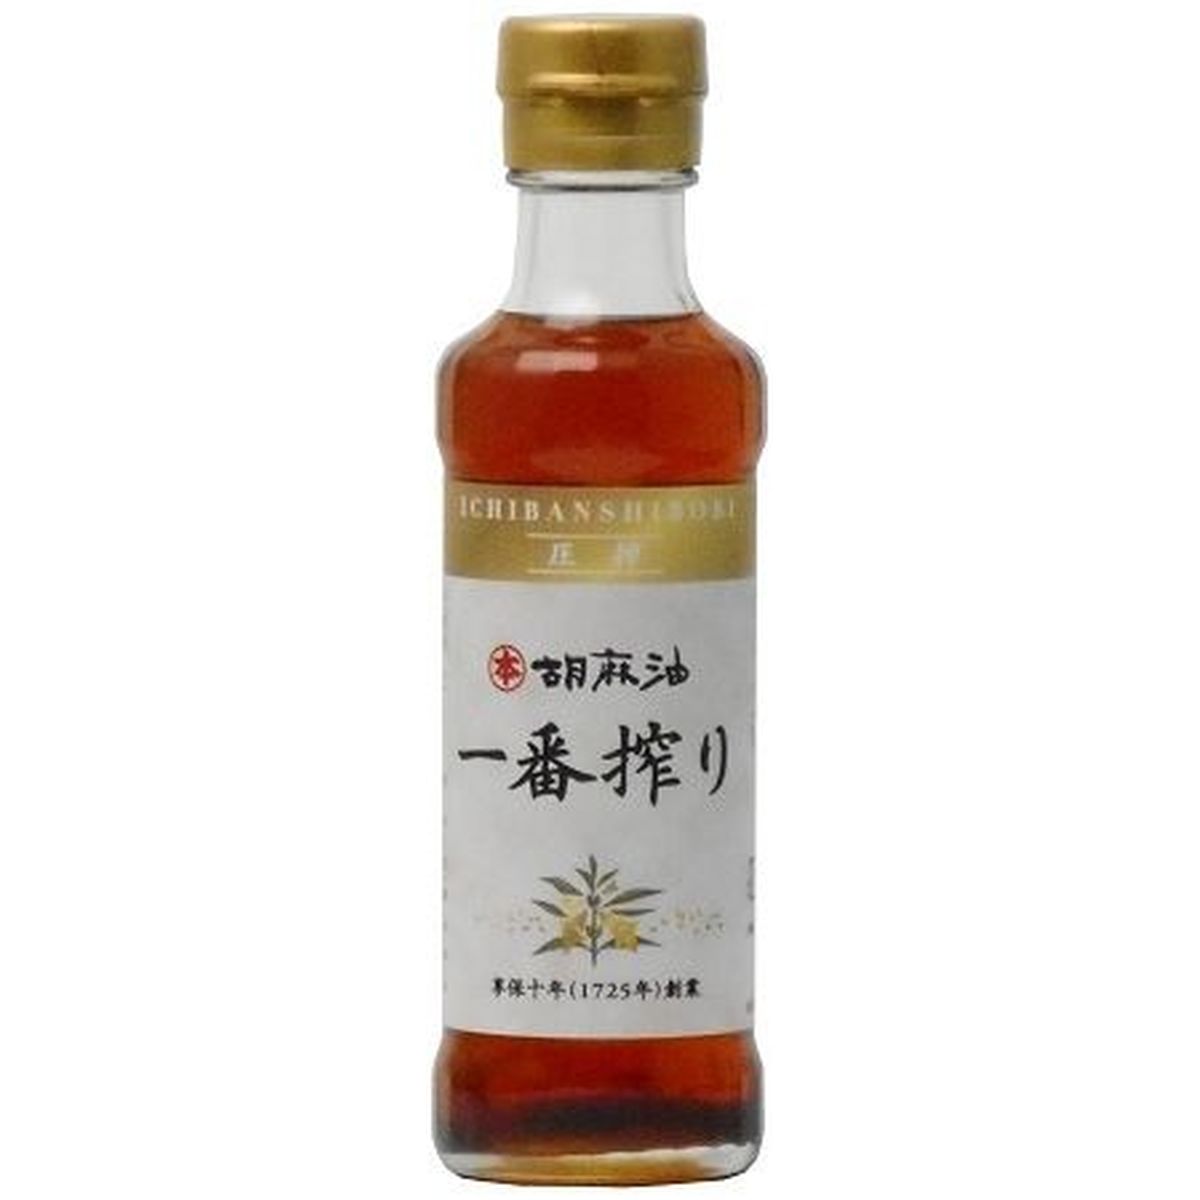 【10個入リ】竹本油脂 マルホン胡麻油 一番搾リ 200g